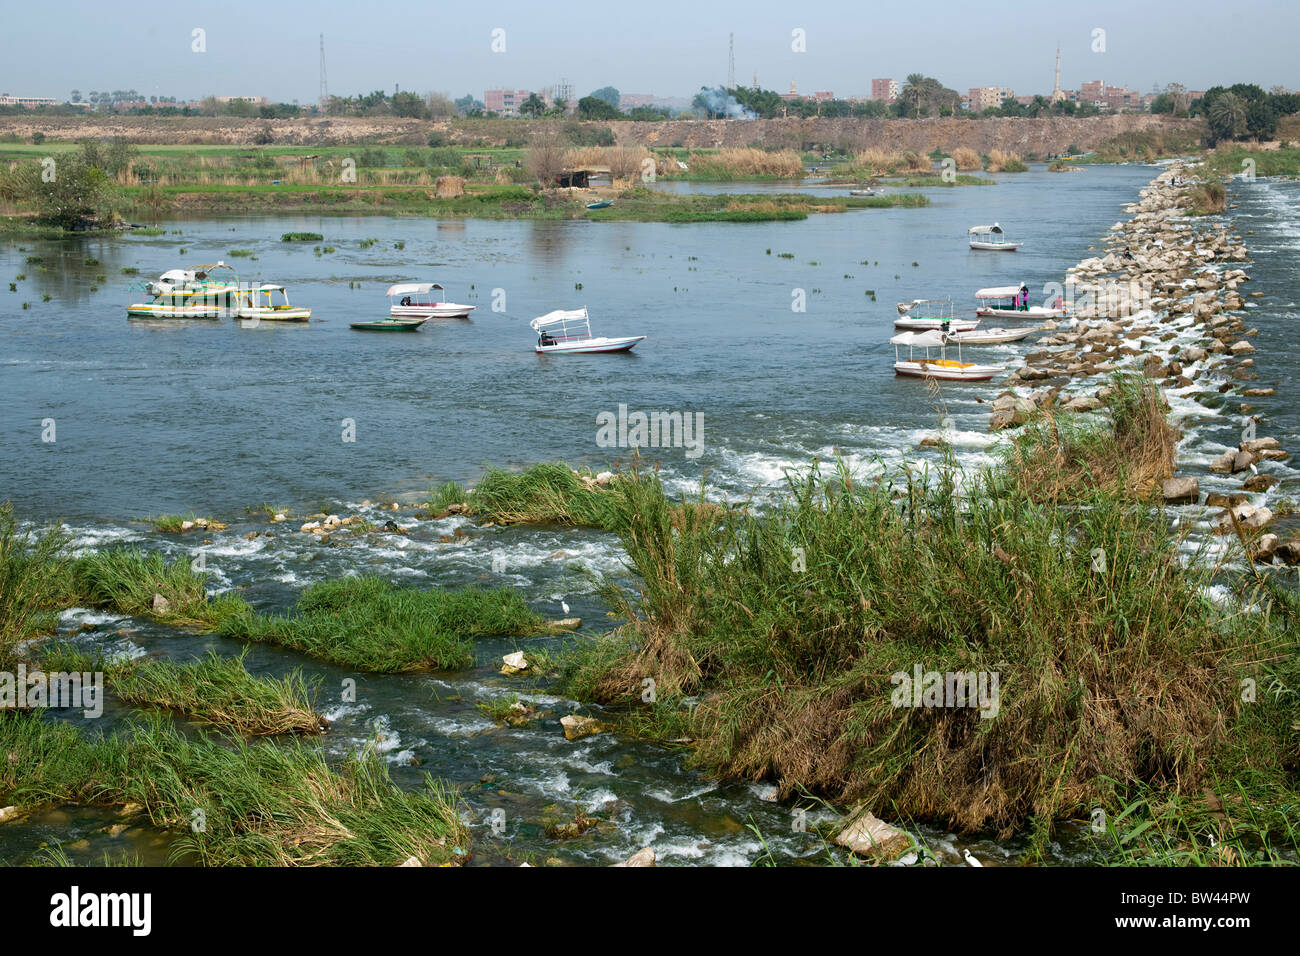 Aegypten, Kairo, Qanater (Kanater), Barrages du Nil, besonders am Wochenende ein beliebtes Ausflugsziel Stock Photo